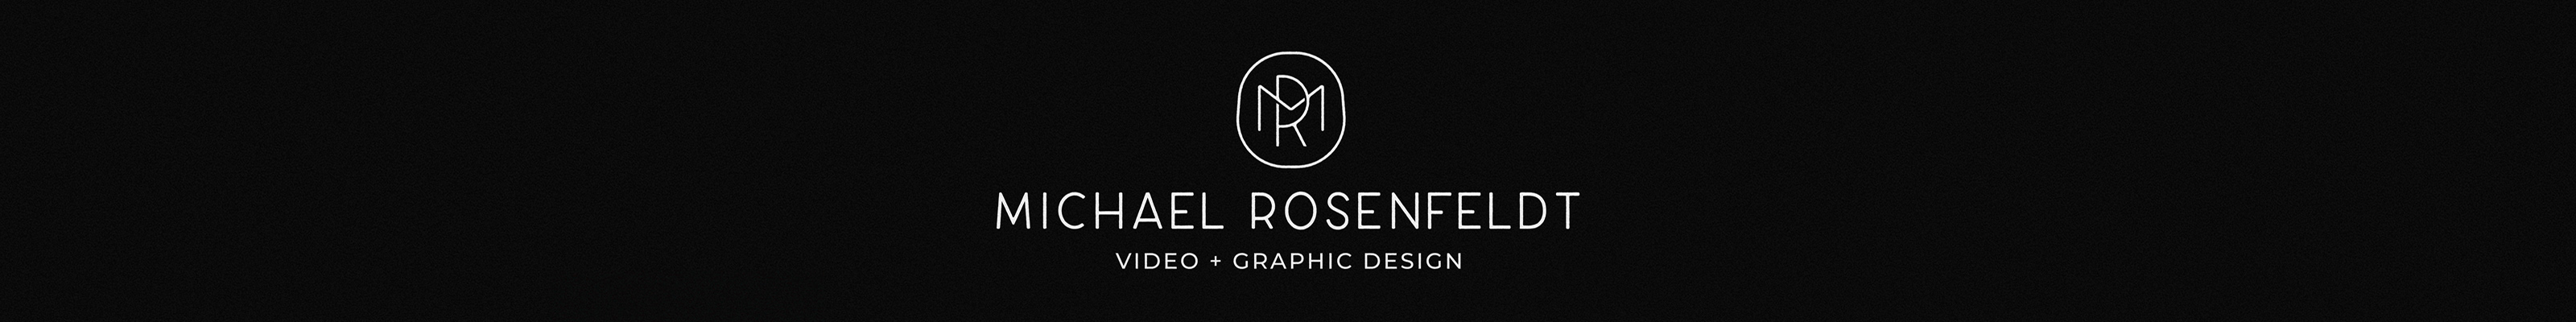 Michael Rosenfeldts profilbanner